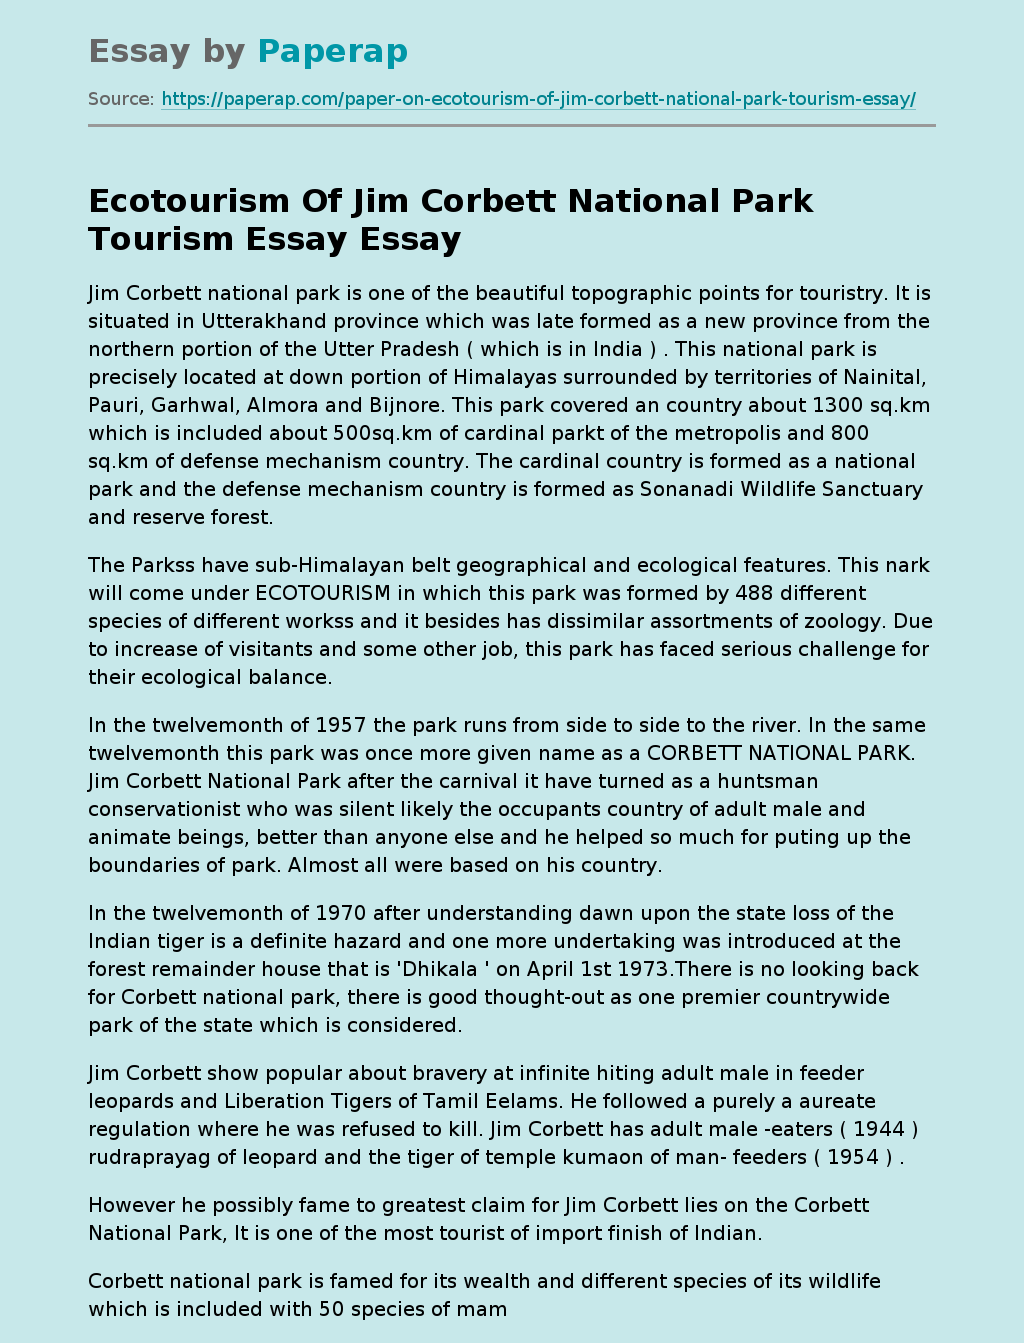 Ecotourism Of Jim Corbett National Park Tourism Essay